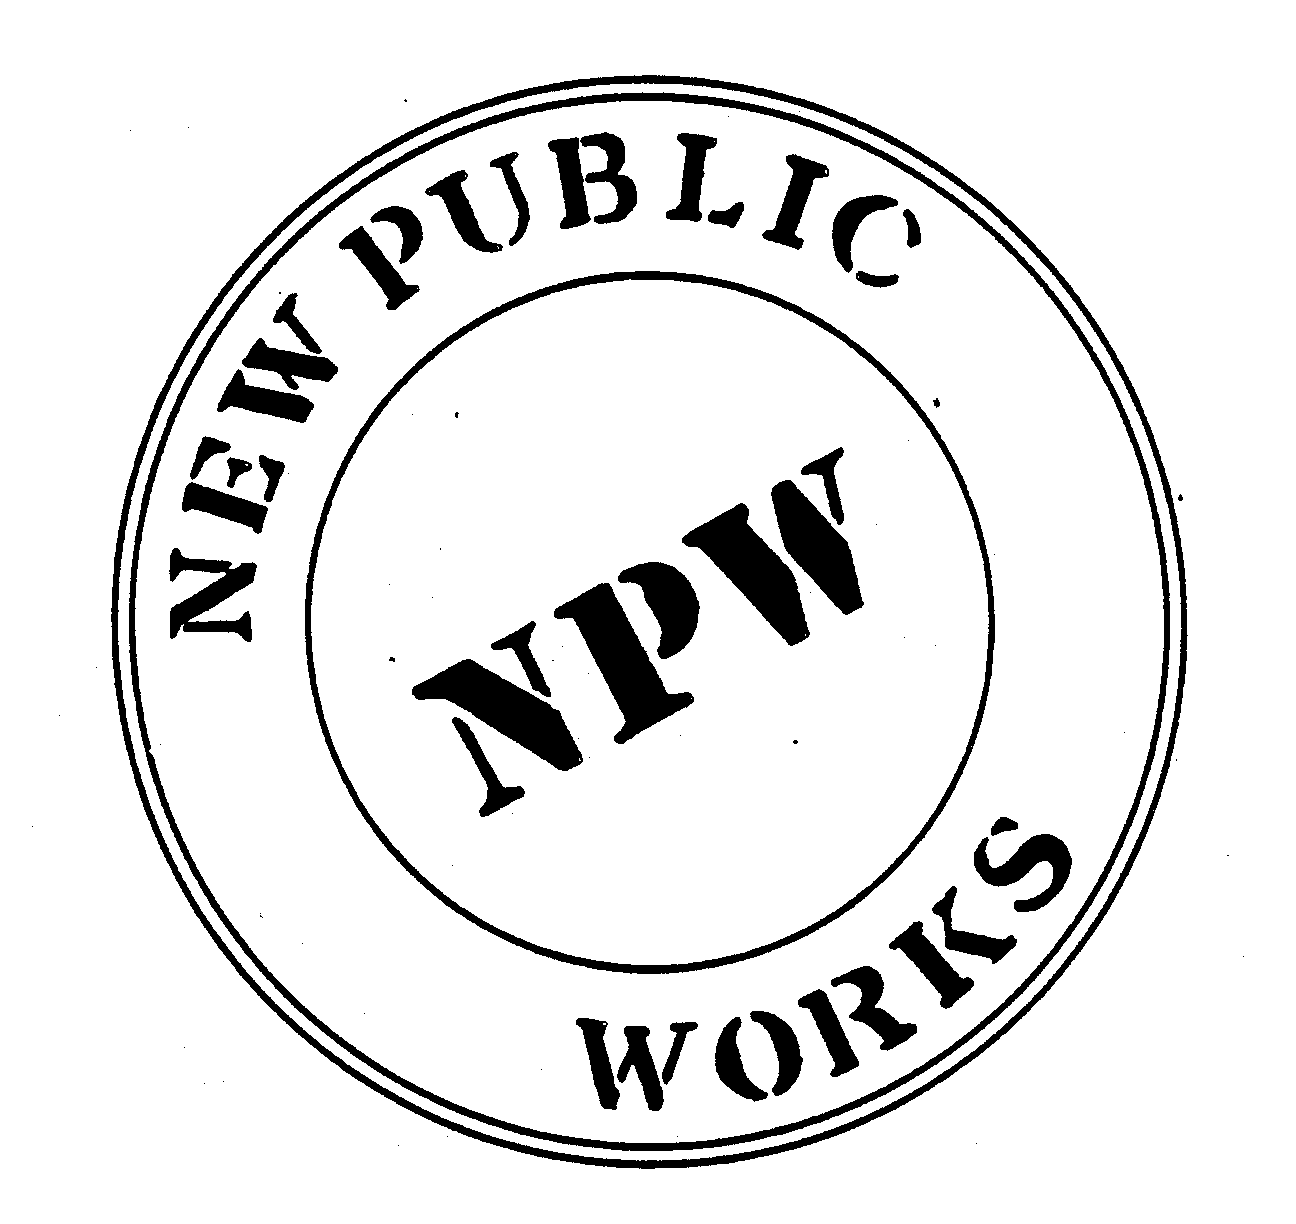  NEW PUBLIC WORKS NPW